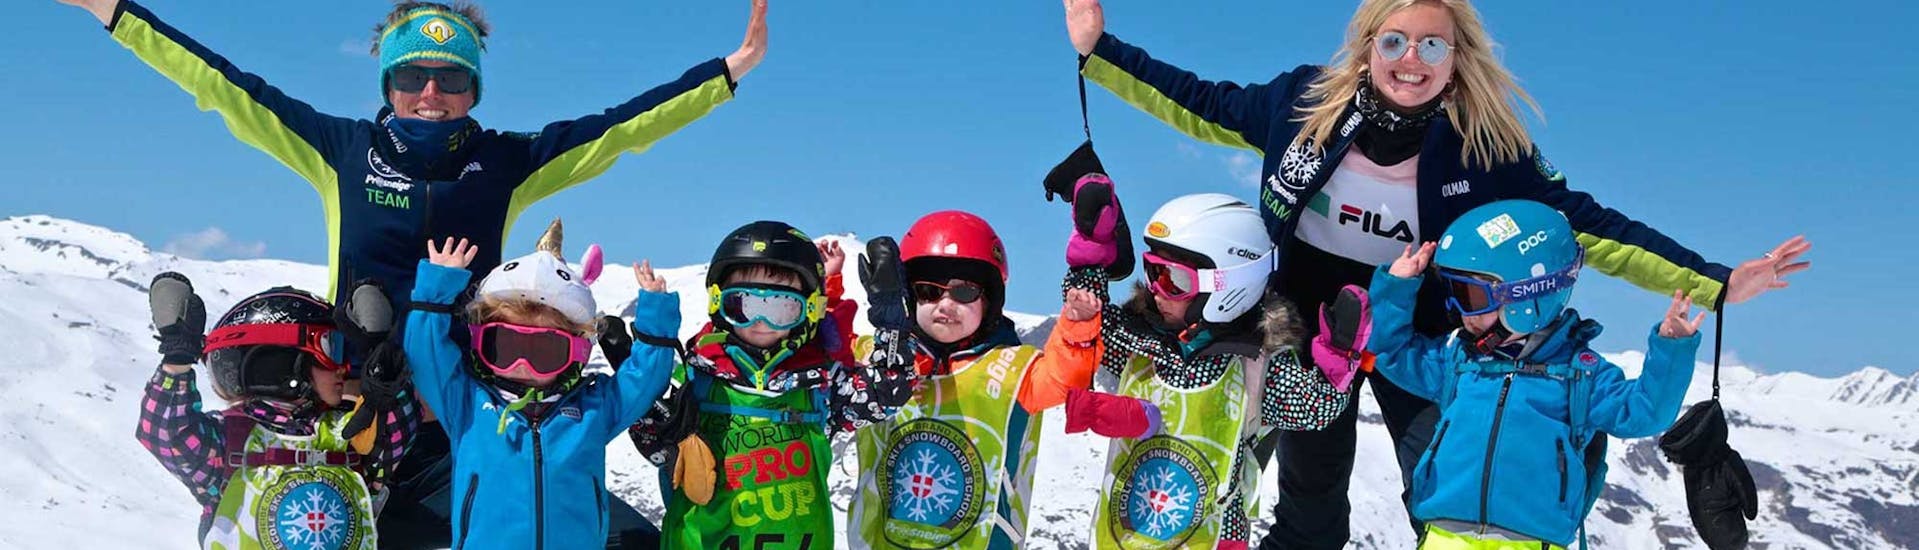 Skilessen voor Kinderen (5-13 jaar) - Max 8 per groep.